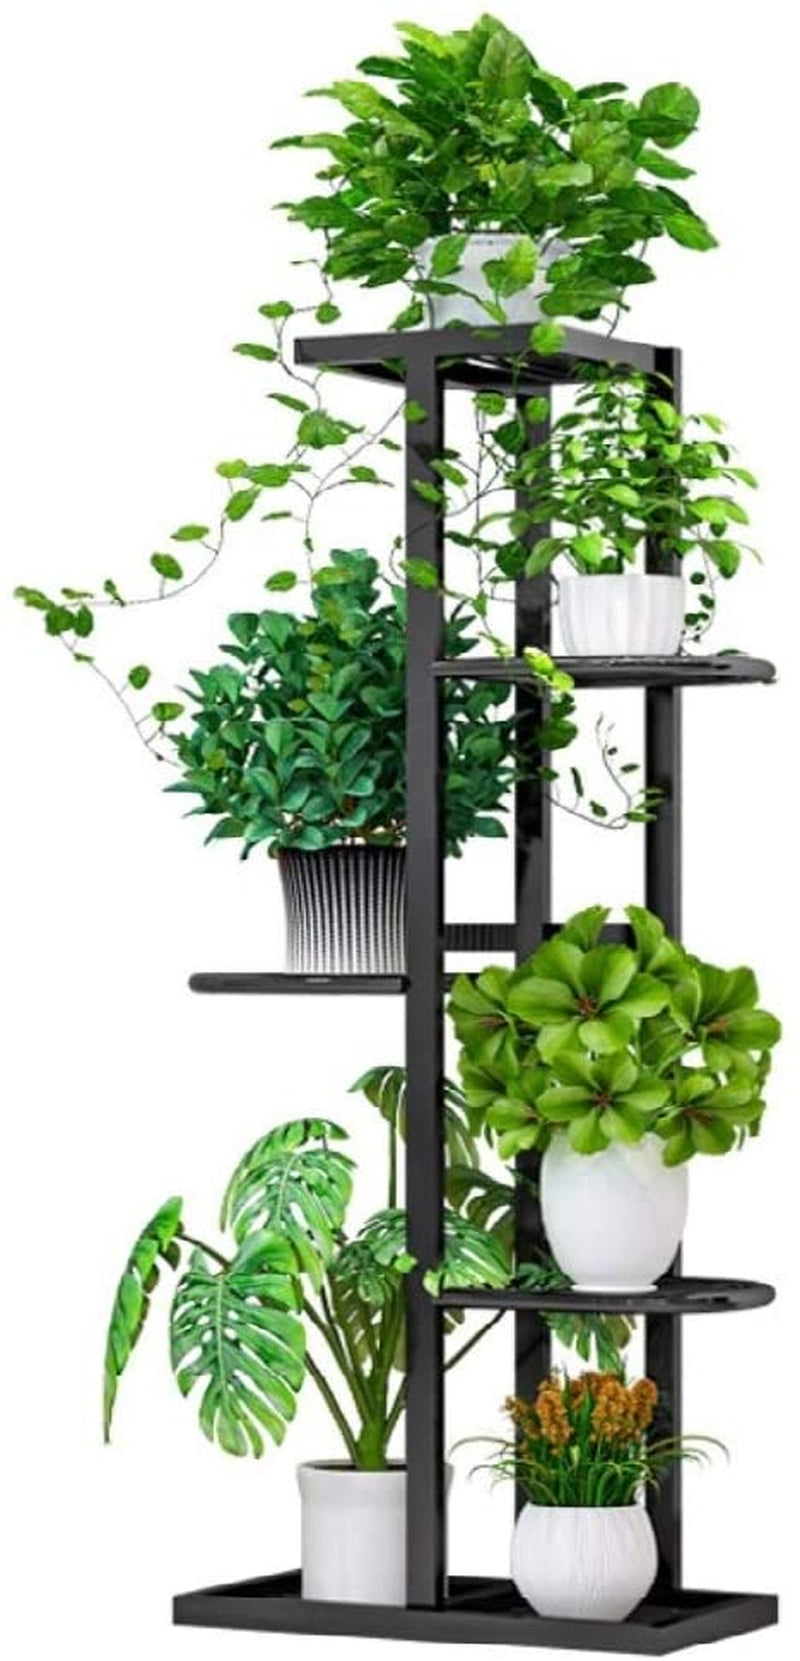 WEENINE, Flower Plant Stand Indoor 5 Tier Metal Plant Stand Flower Pots Stander Display Pots Holder (Black)